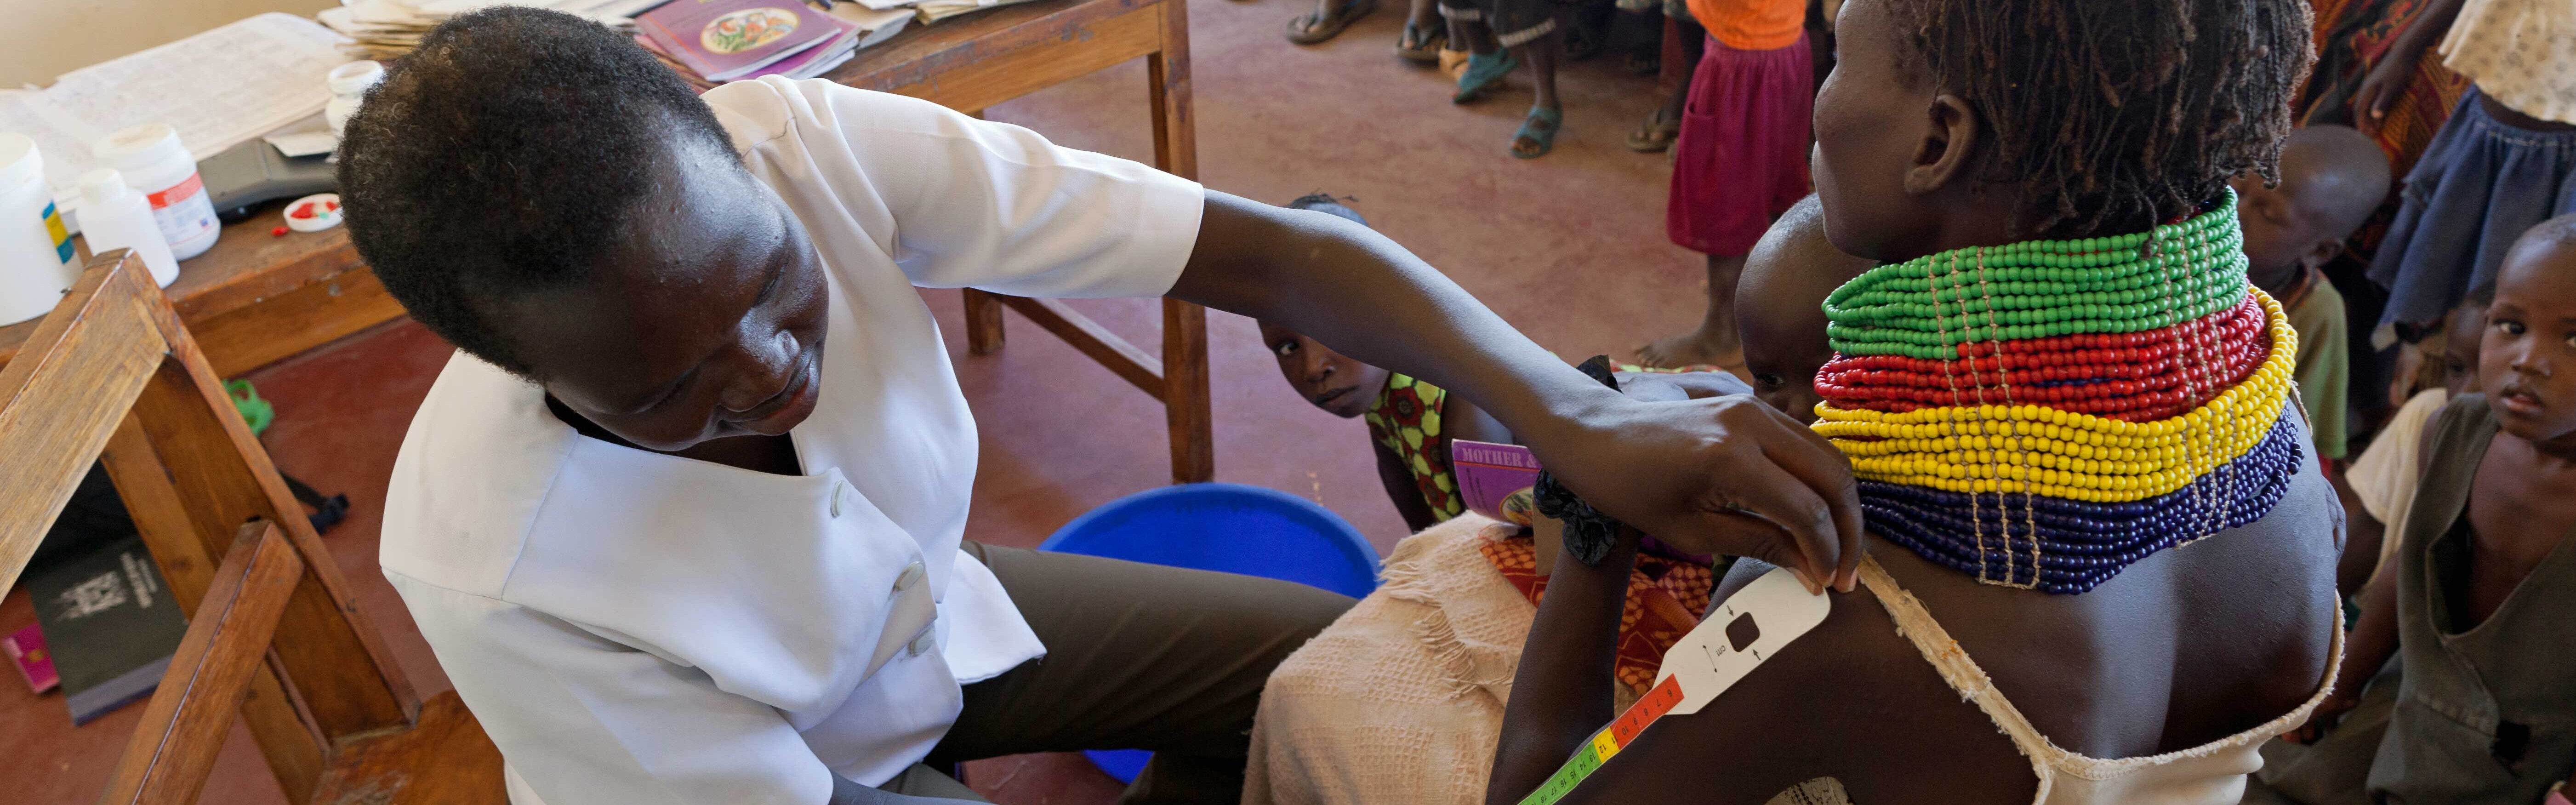 Eine Ärztin kümmert sich in Kenia um unterernährte Menschen